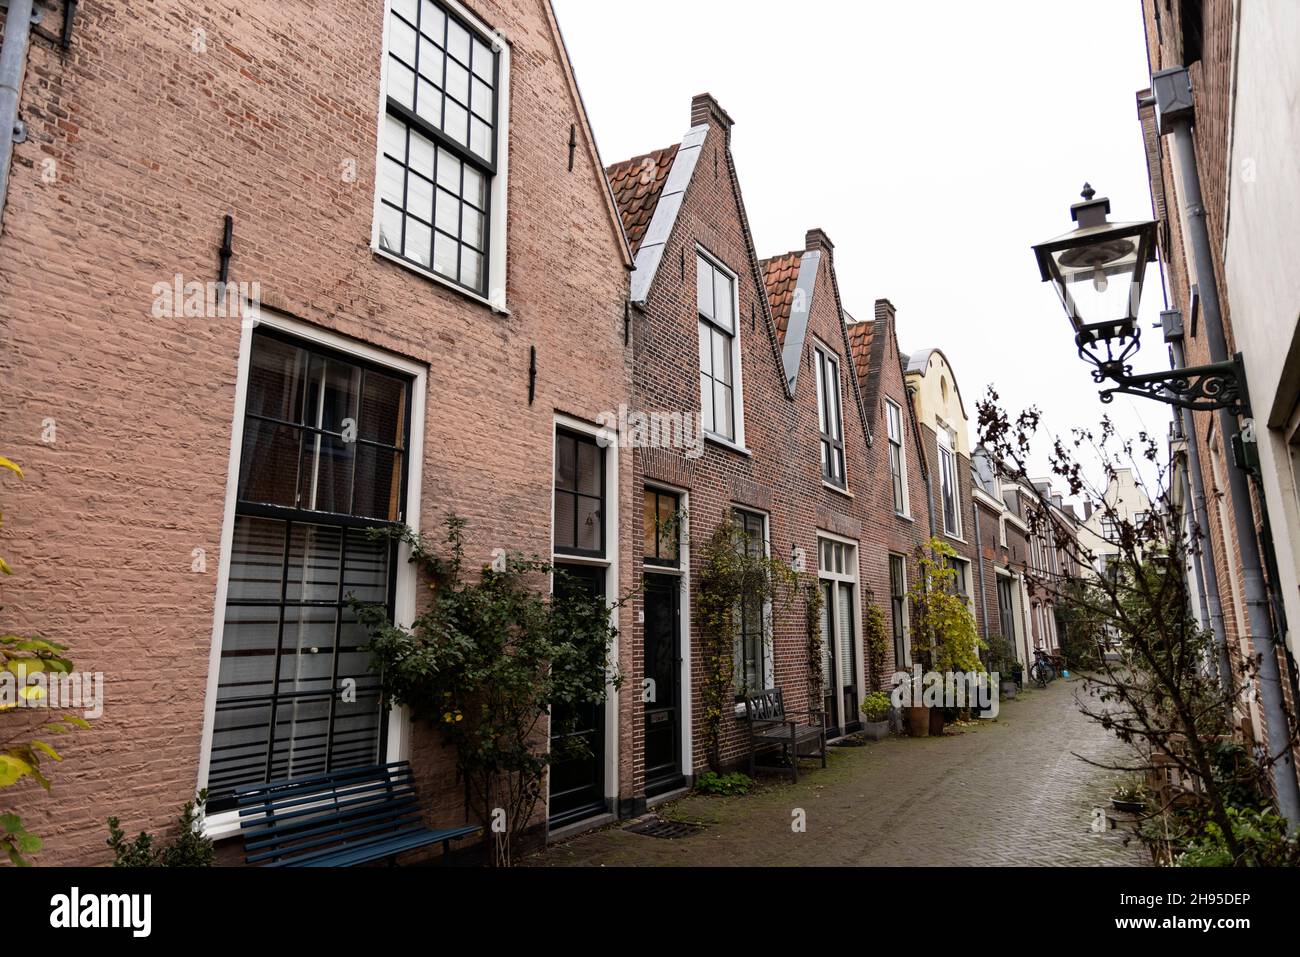 Former weavers' houses on Spilsteeg in Leiden, Netherlands. Stock Photo